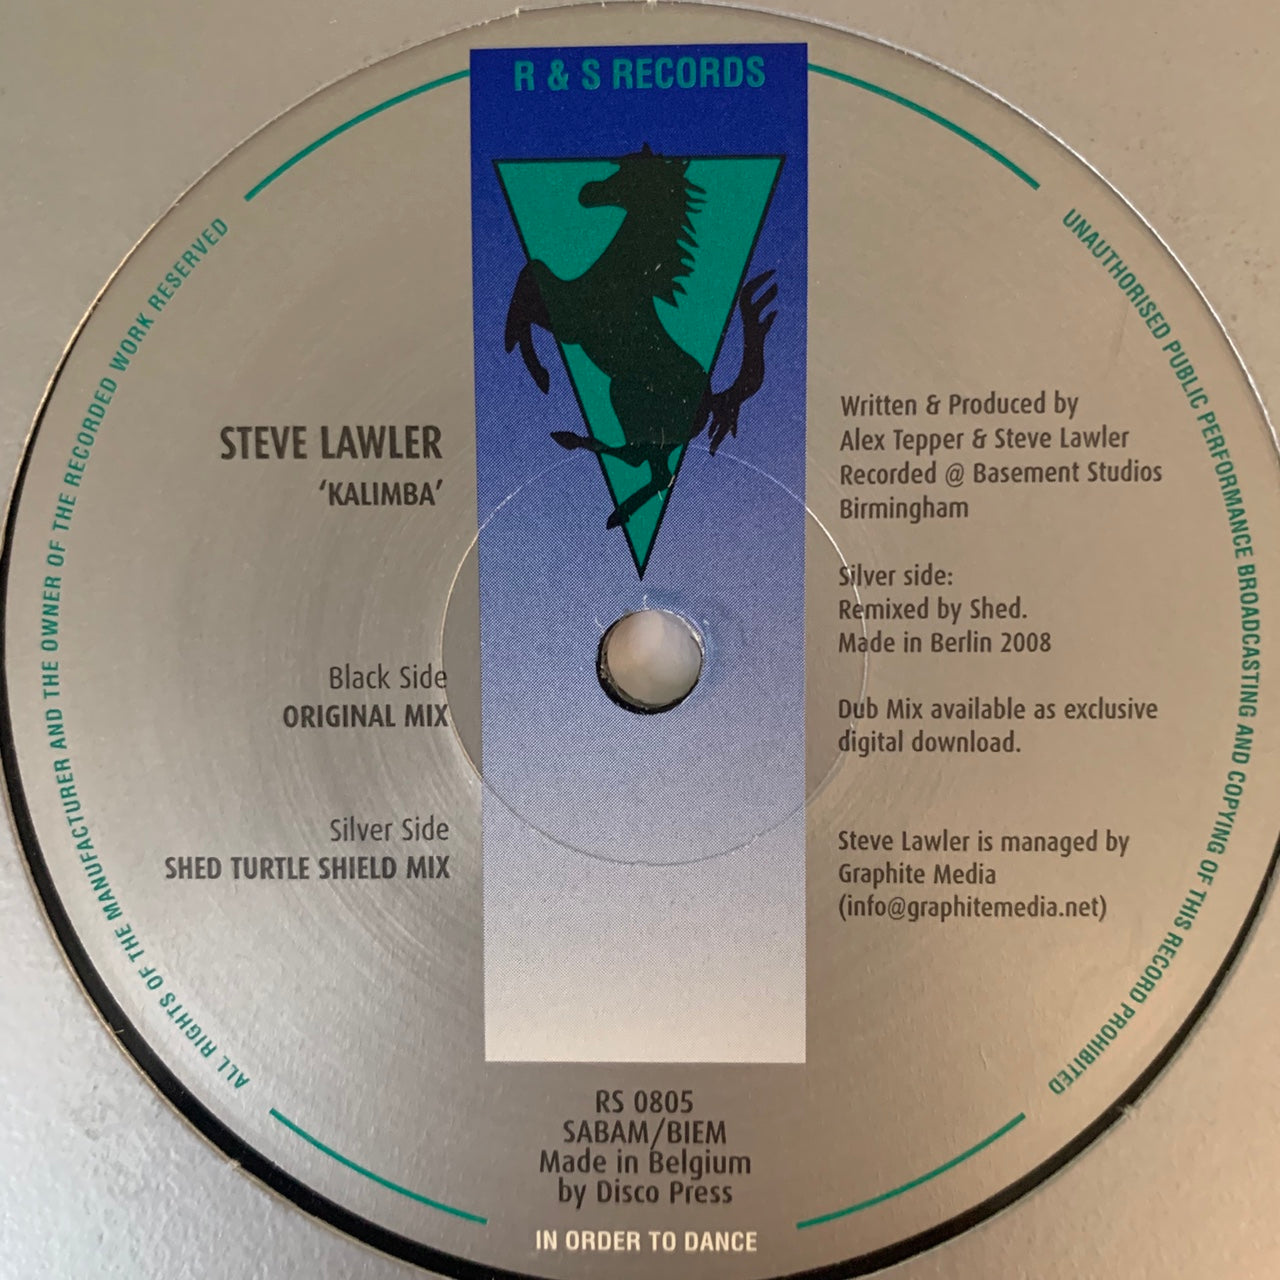 Steve Lawler “Kalimber” 2 Track 12inch Vinyl